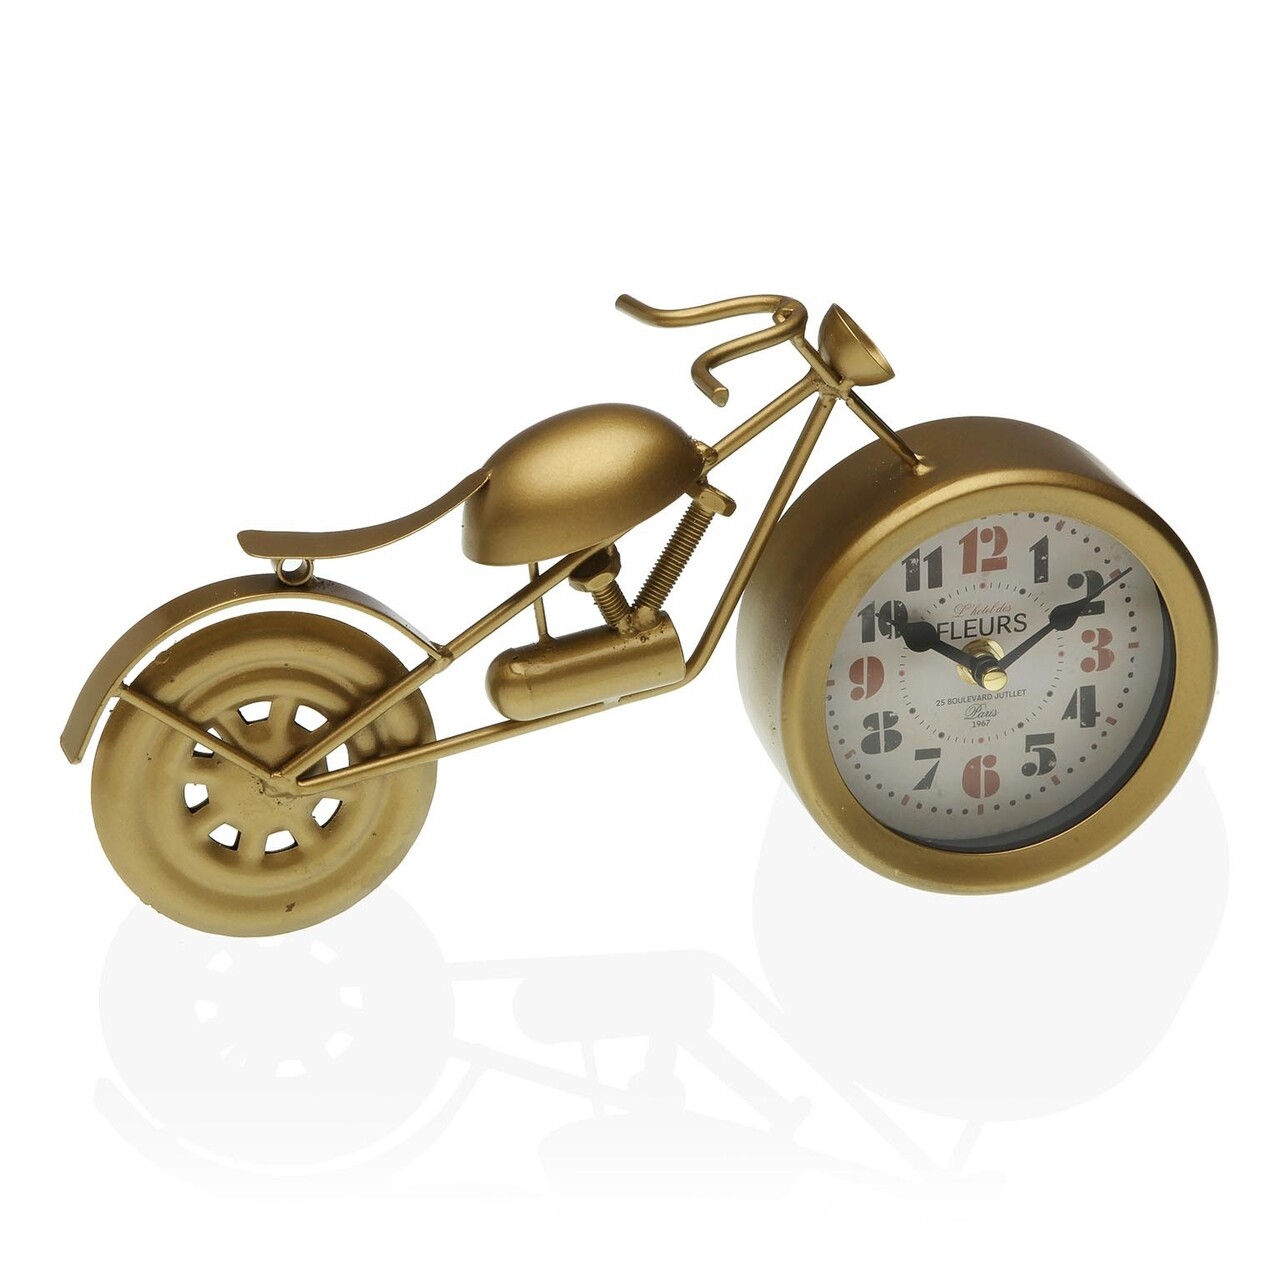 Motorbike Asztali óra, Versa, 31 x 5.5 x 17 cm, fém, aranyszín